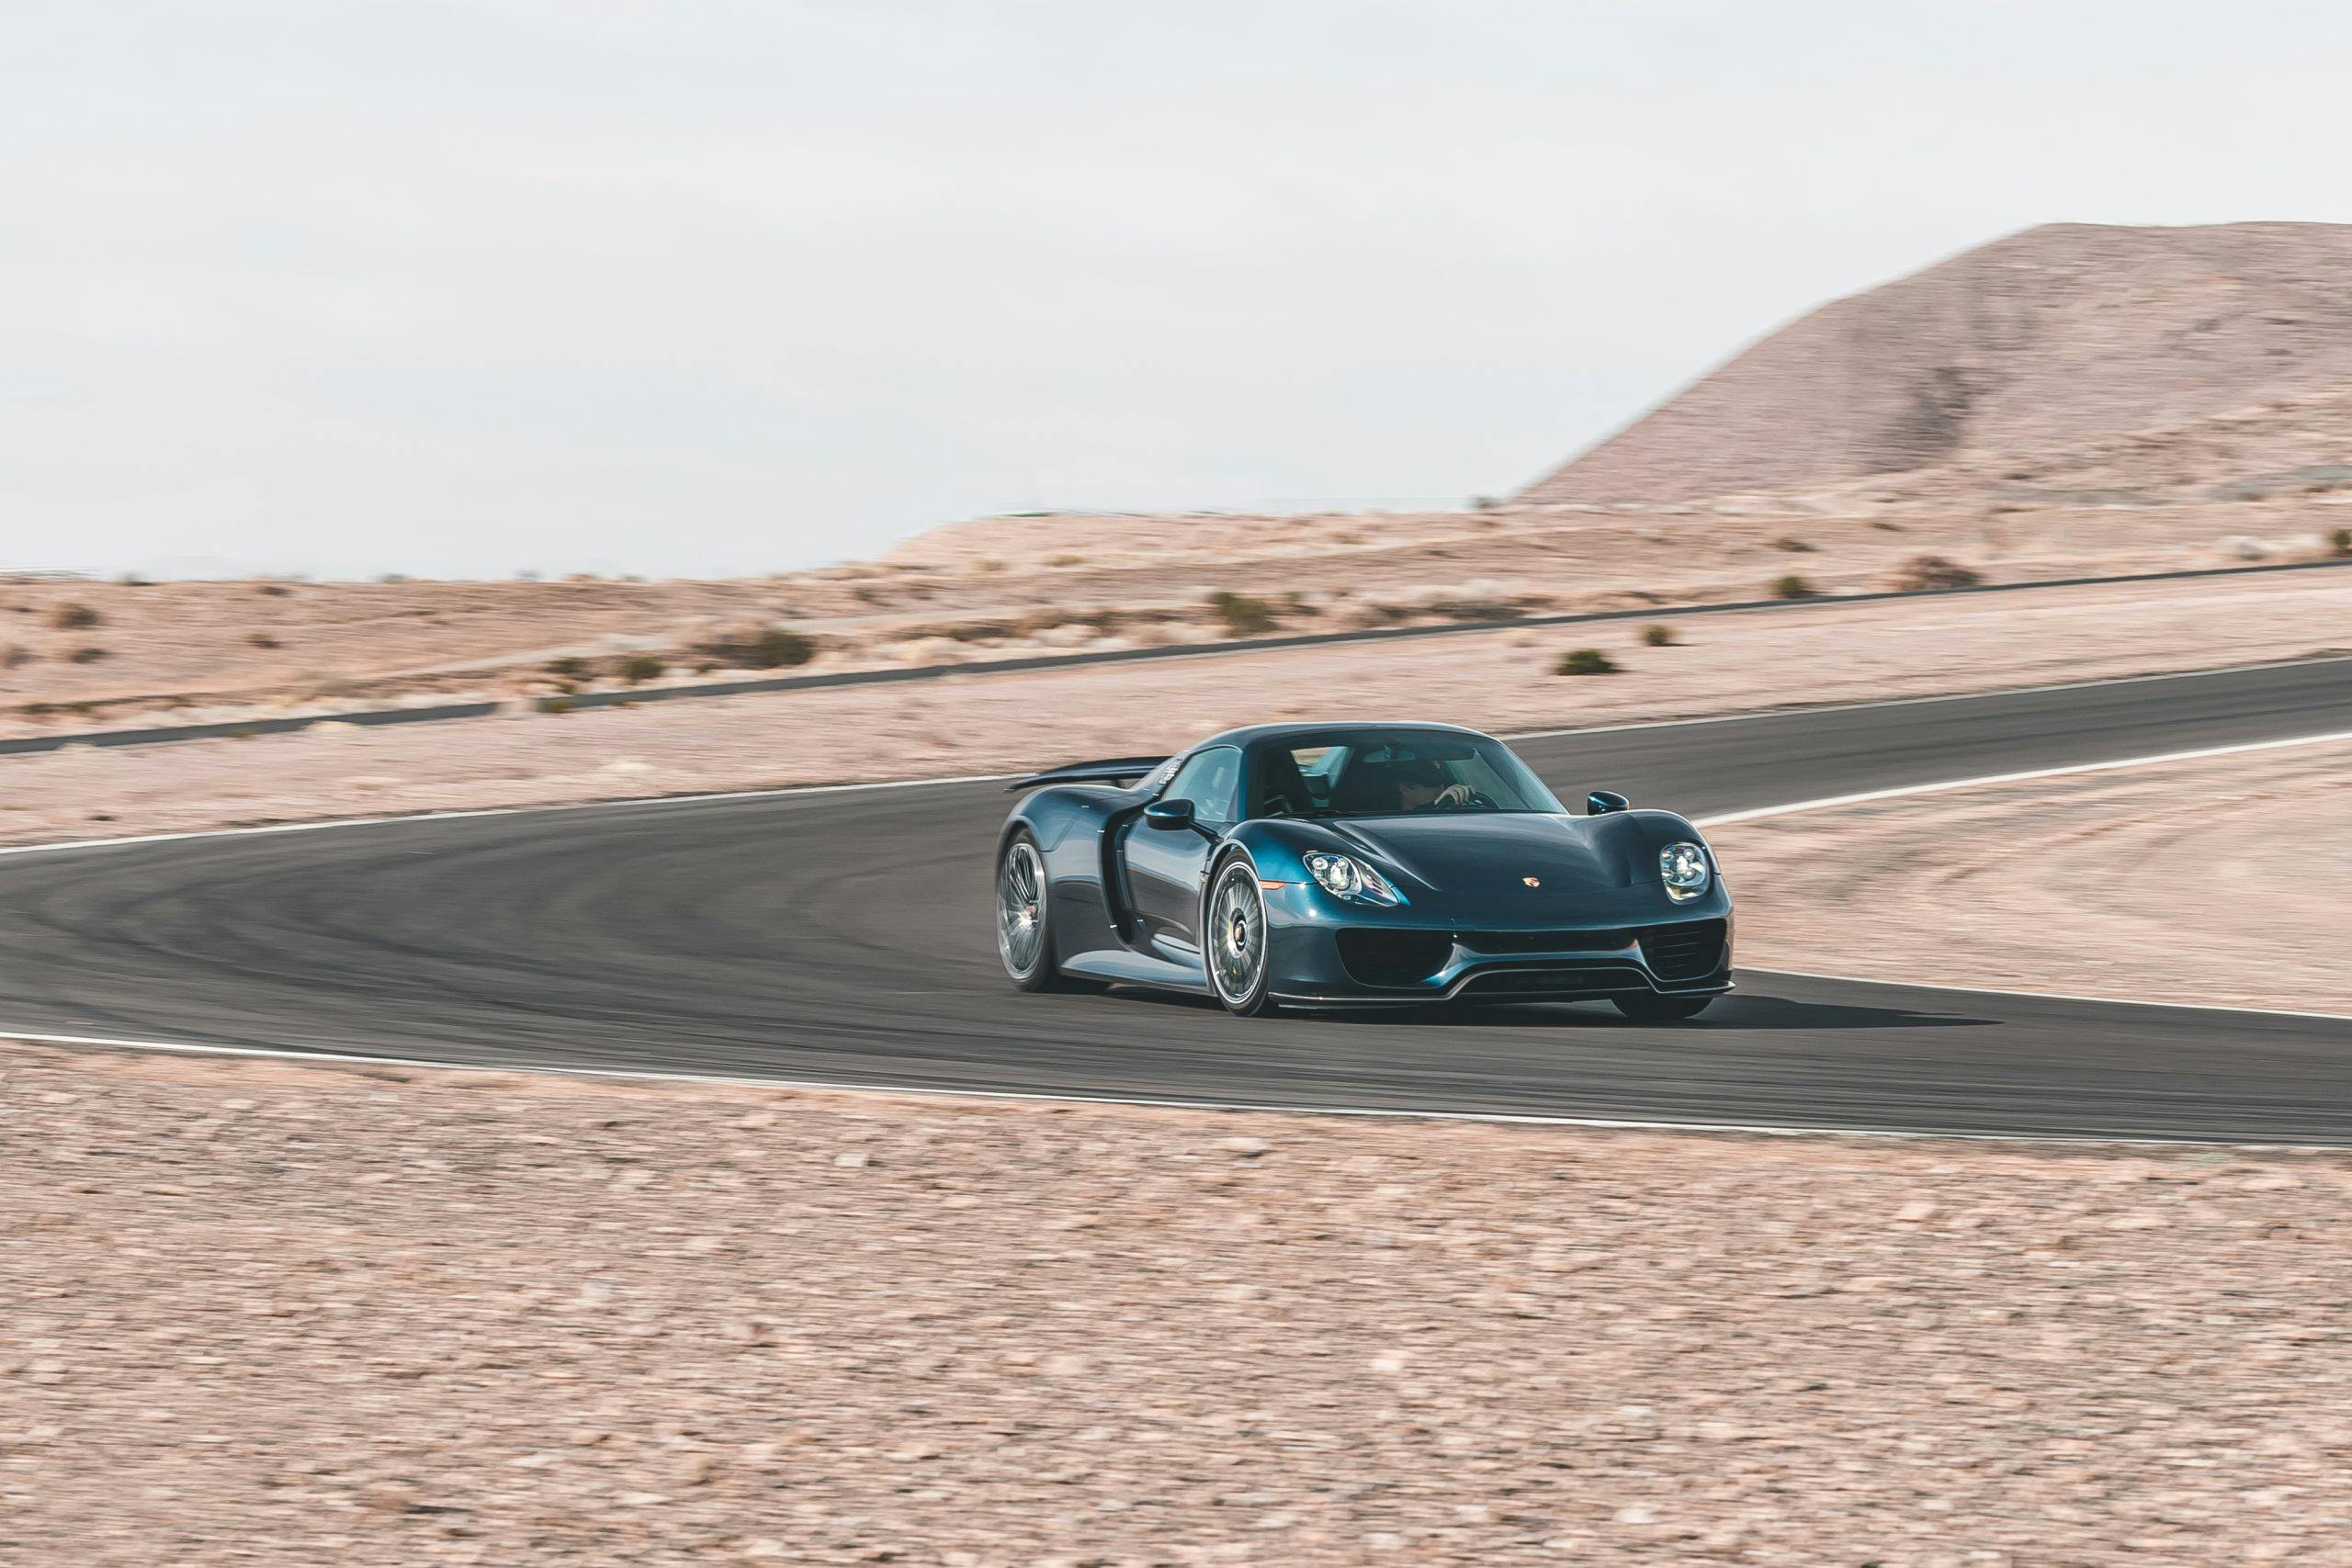 2015 Porsche 918 Spyder on track